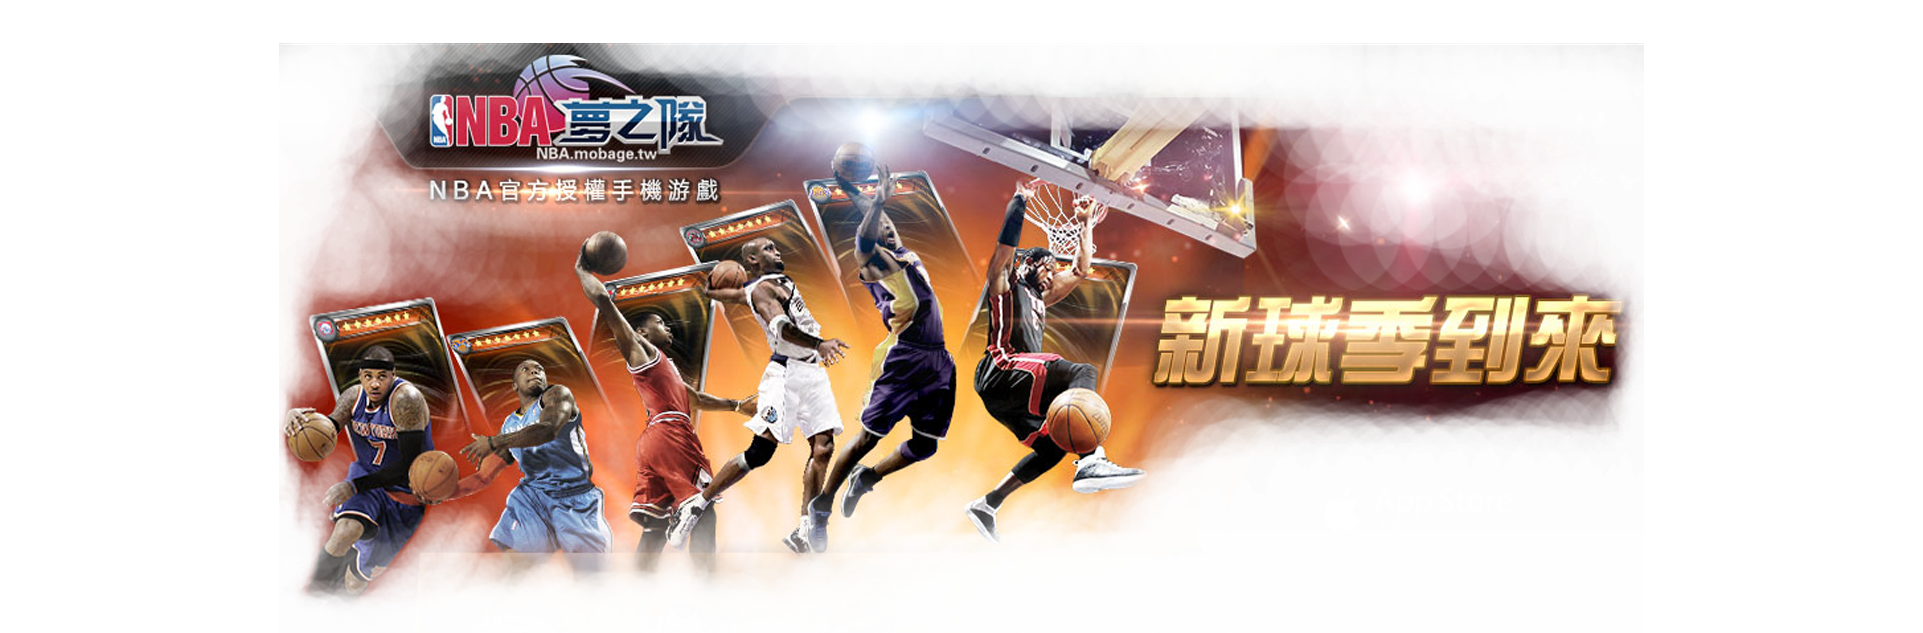 歐博娛樂NBA官方授權手遊